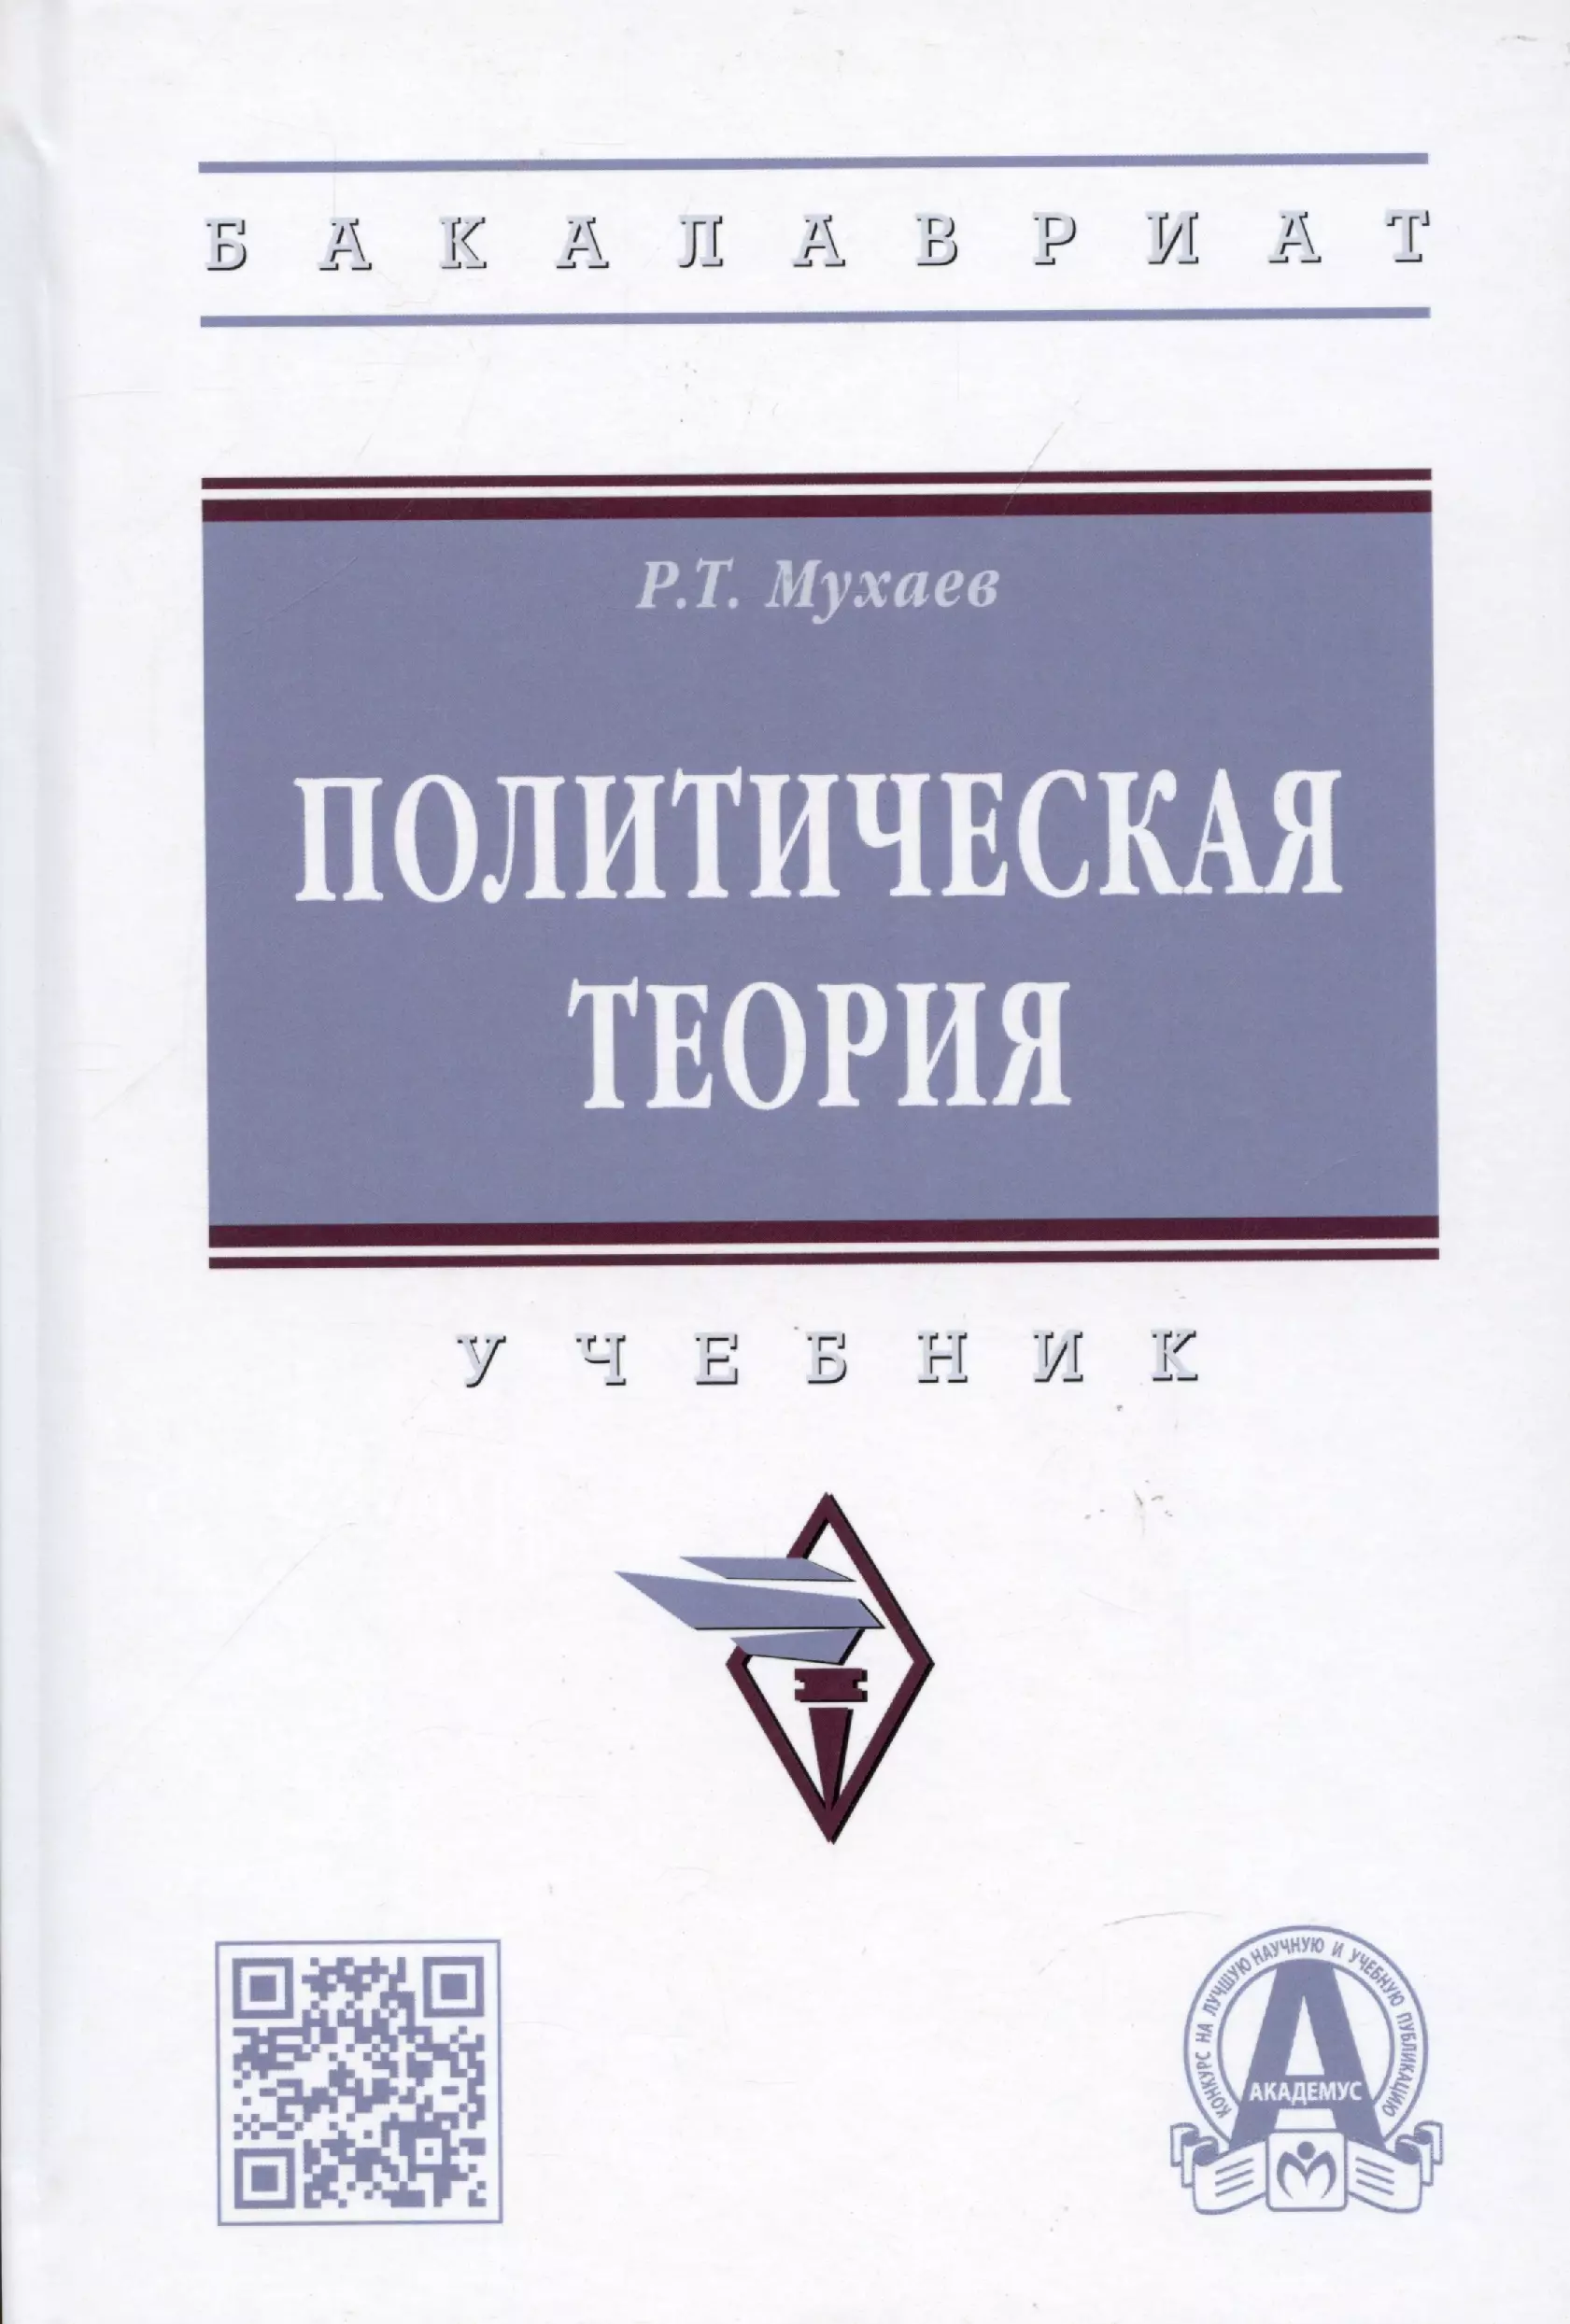 Мухаев Рашид Тазитдинович - Политическая теория: учебник